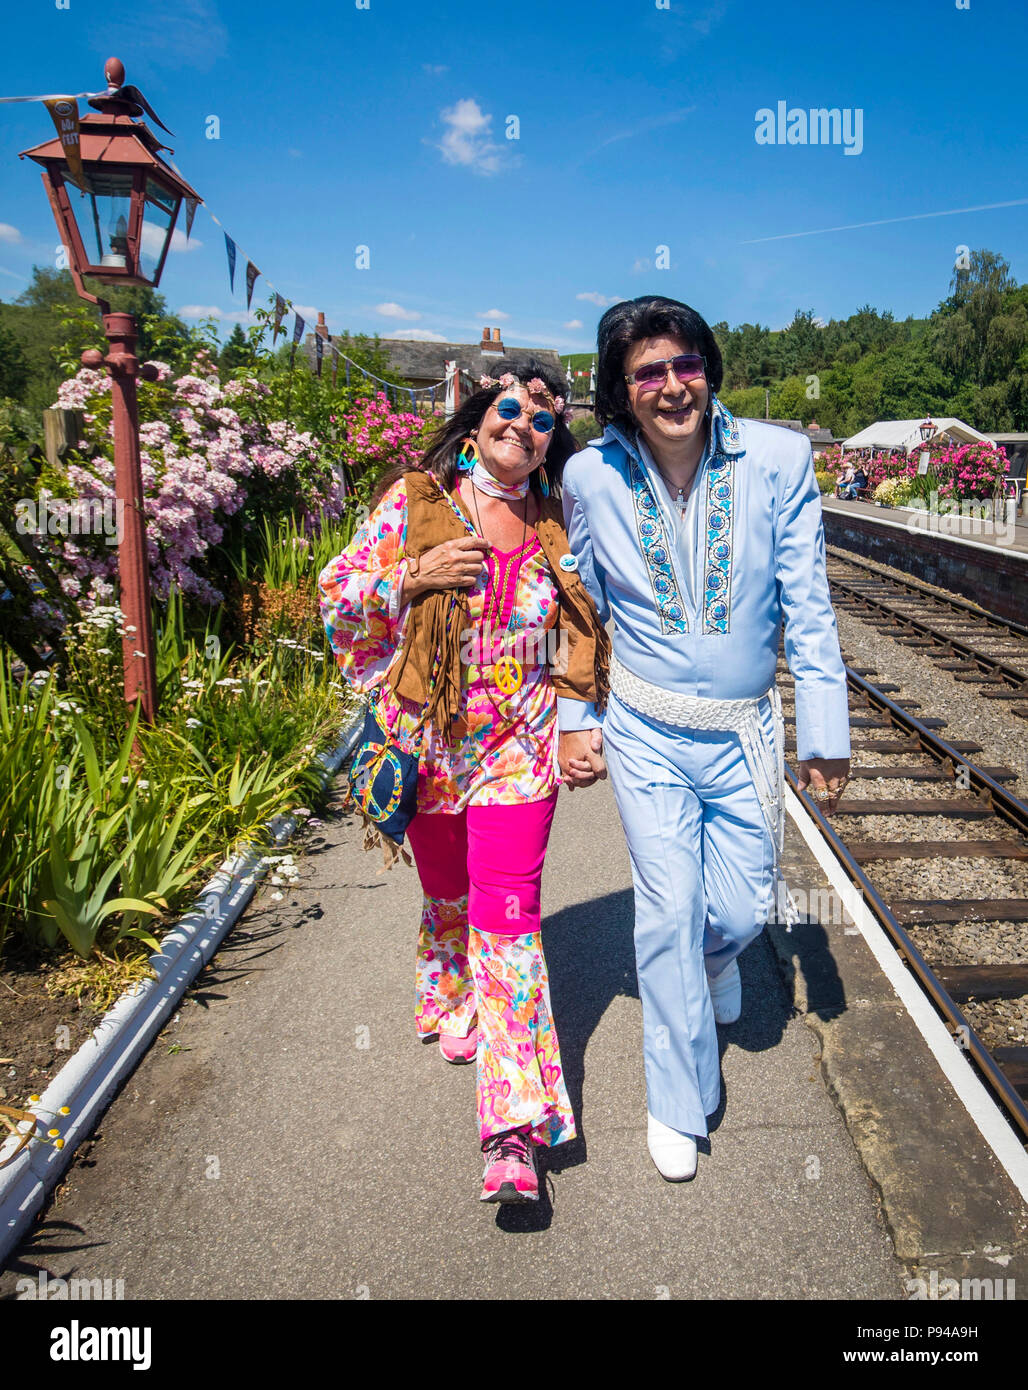 Susanne Lende mit Elvis tribute artist Steve Caprice während der North Yorkshire Moors Railway 60 s Fest 2018 Levisham station in Yorkshire. Stockfoto